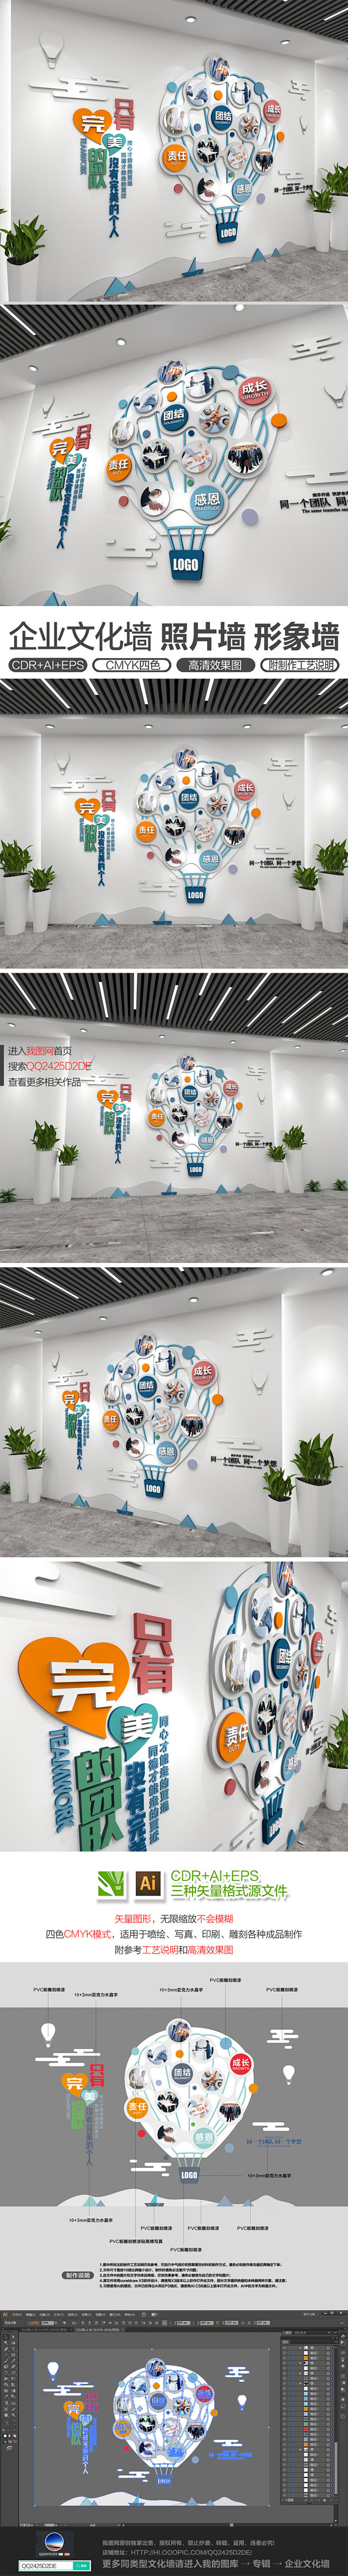 热气球创意企业文化墙照片墙公司员工风采